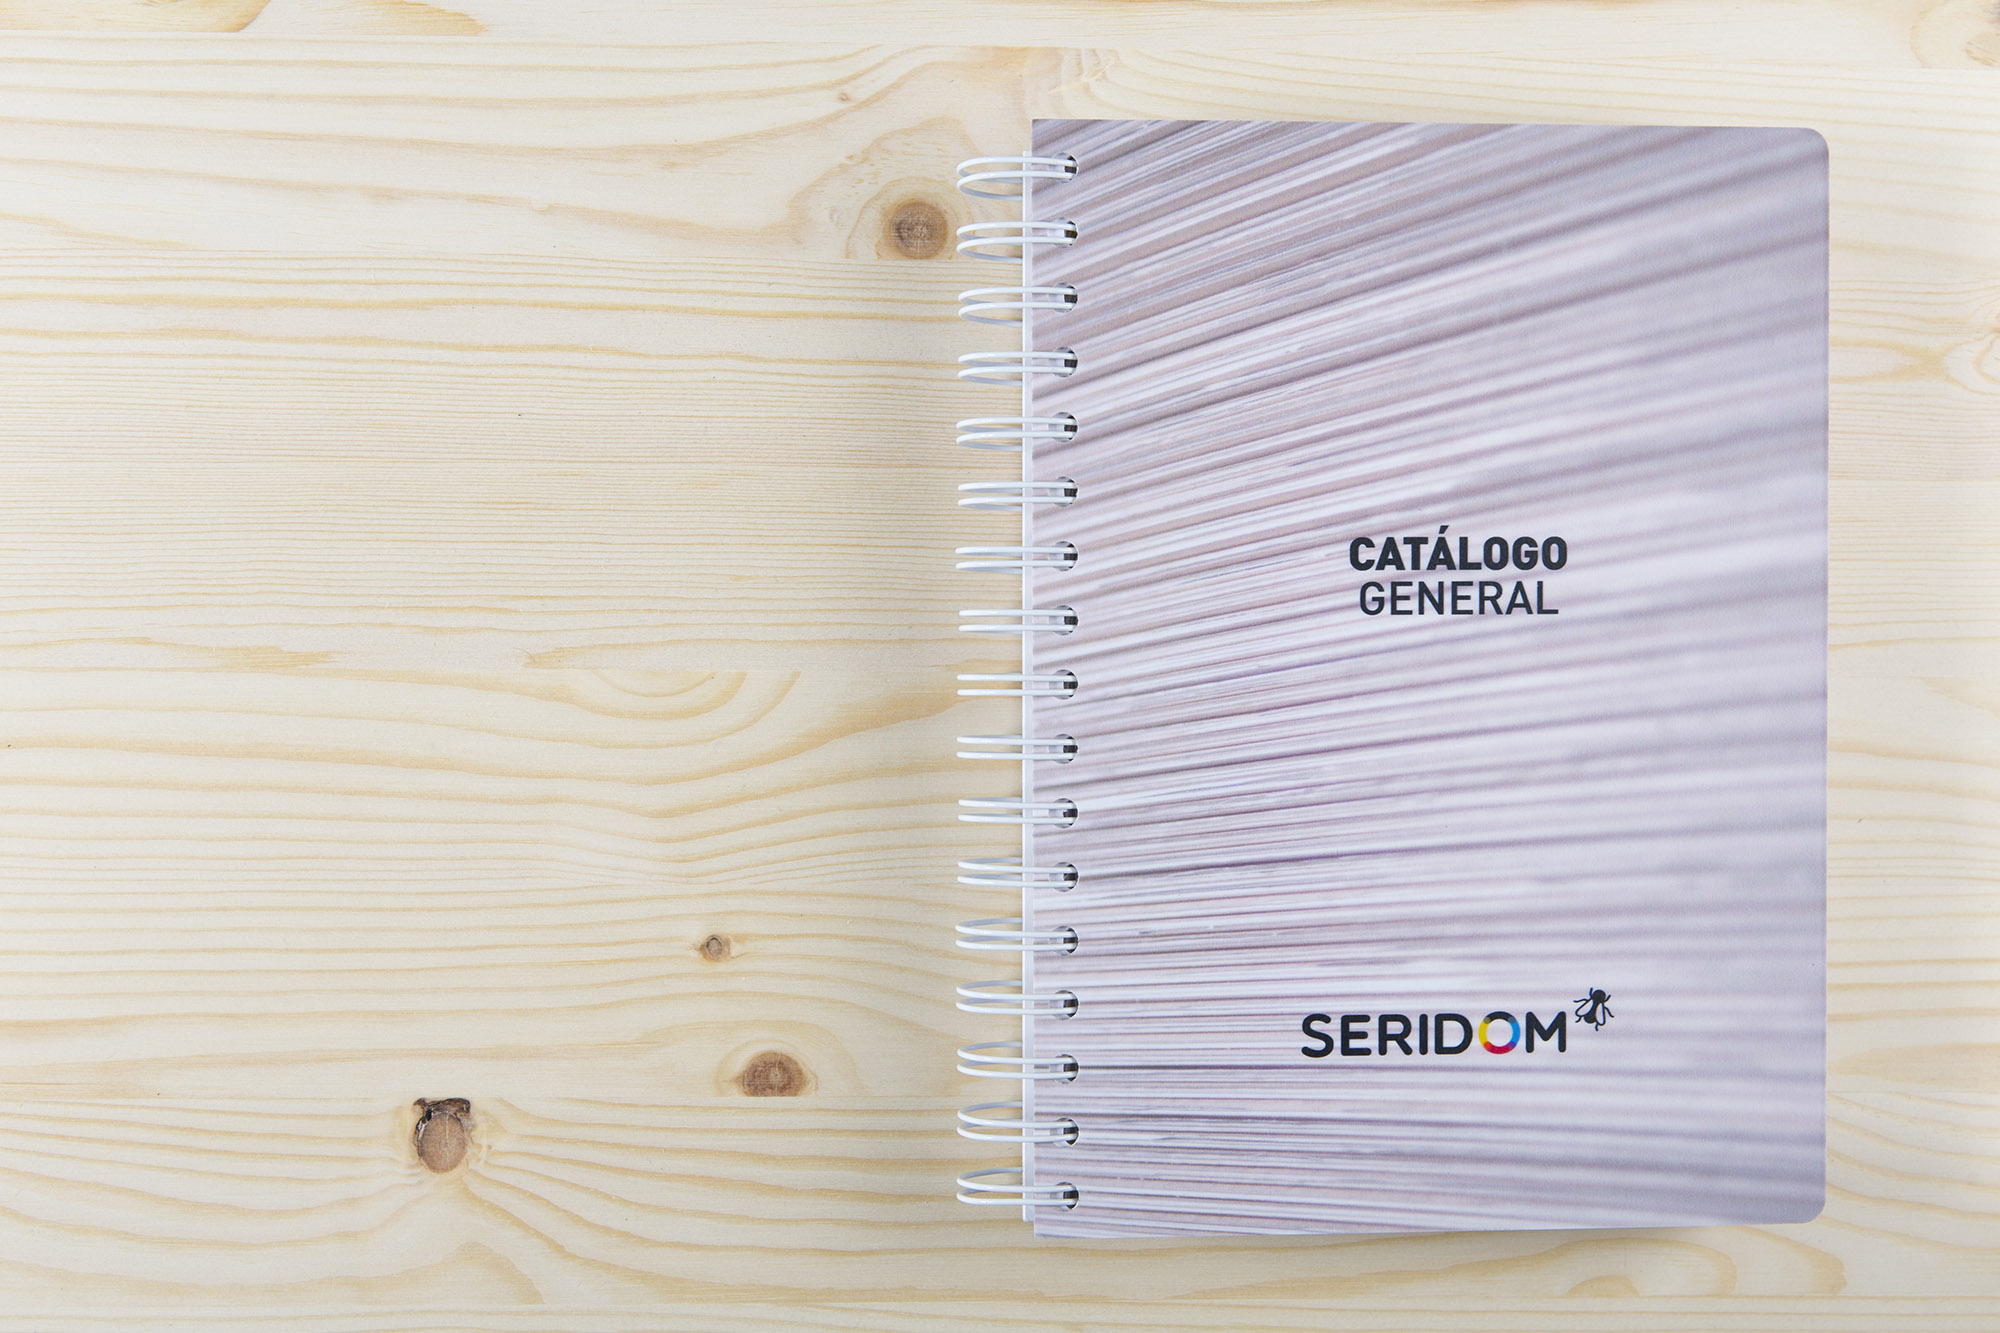 Diseño del Catálogo General de Servicios y Productos de Seridom